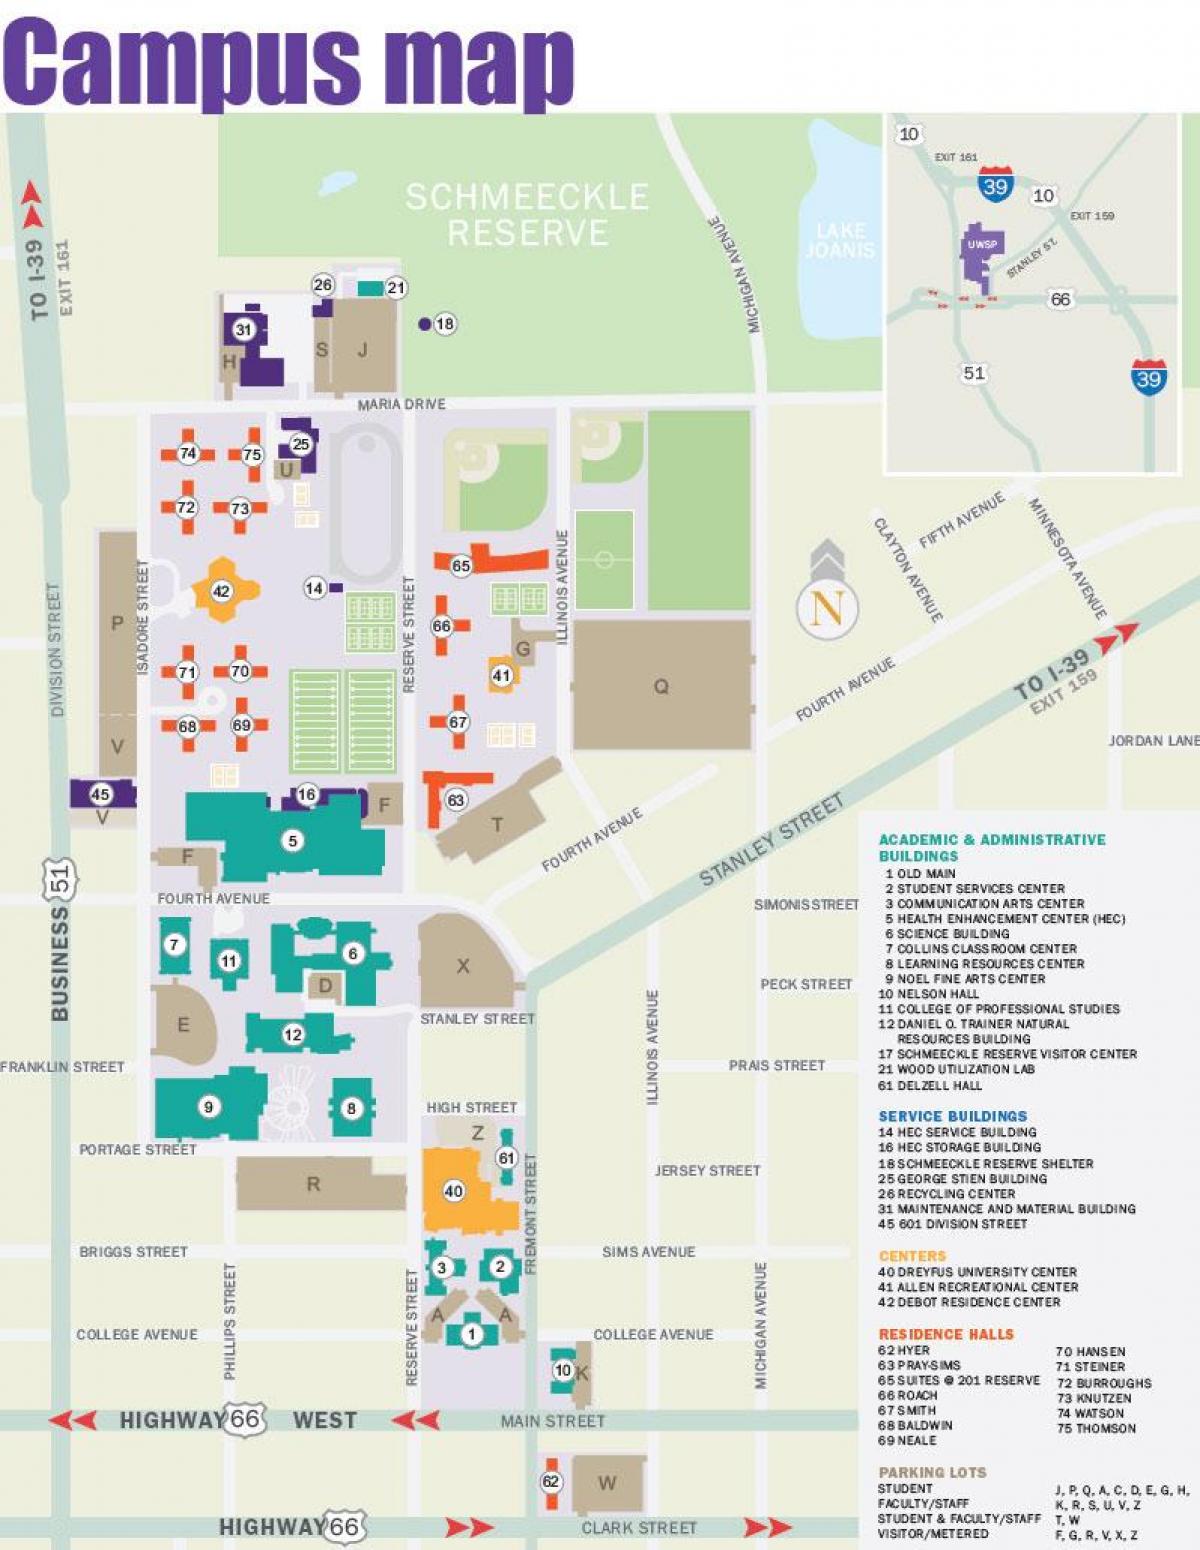 карта кампуса нью-йоркскага універсітэта